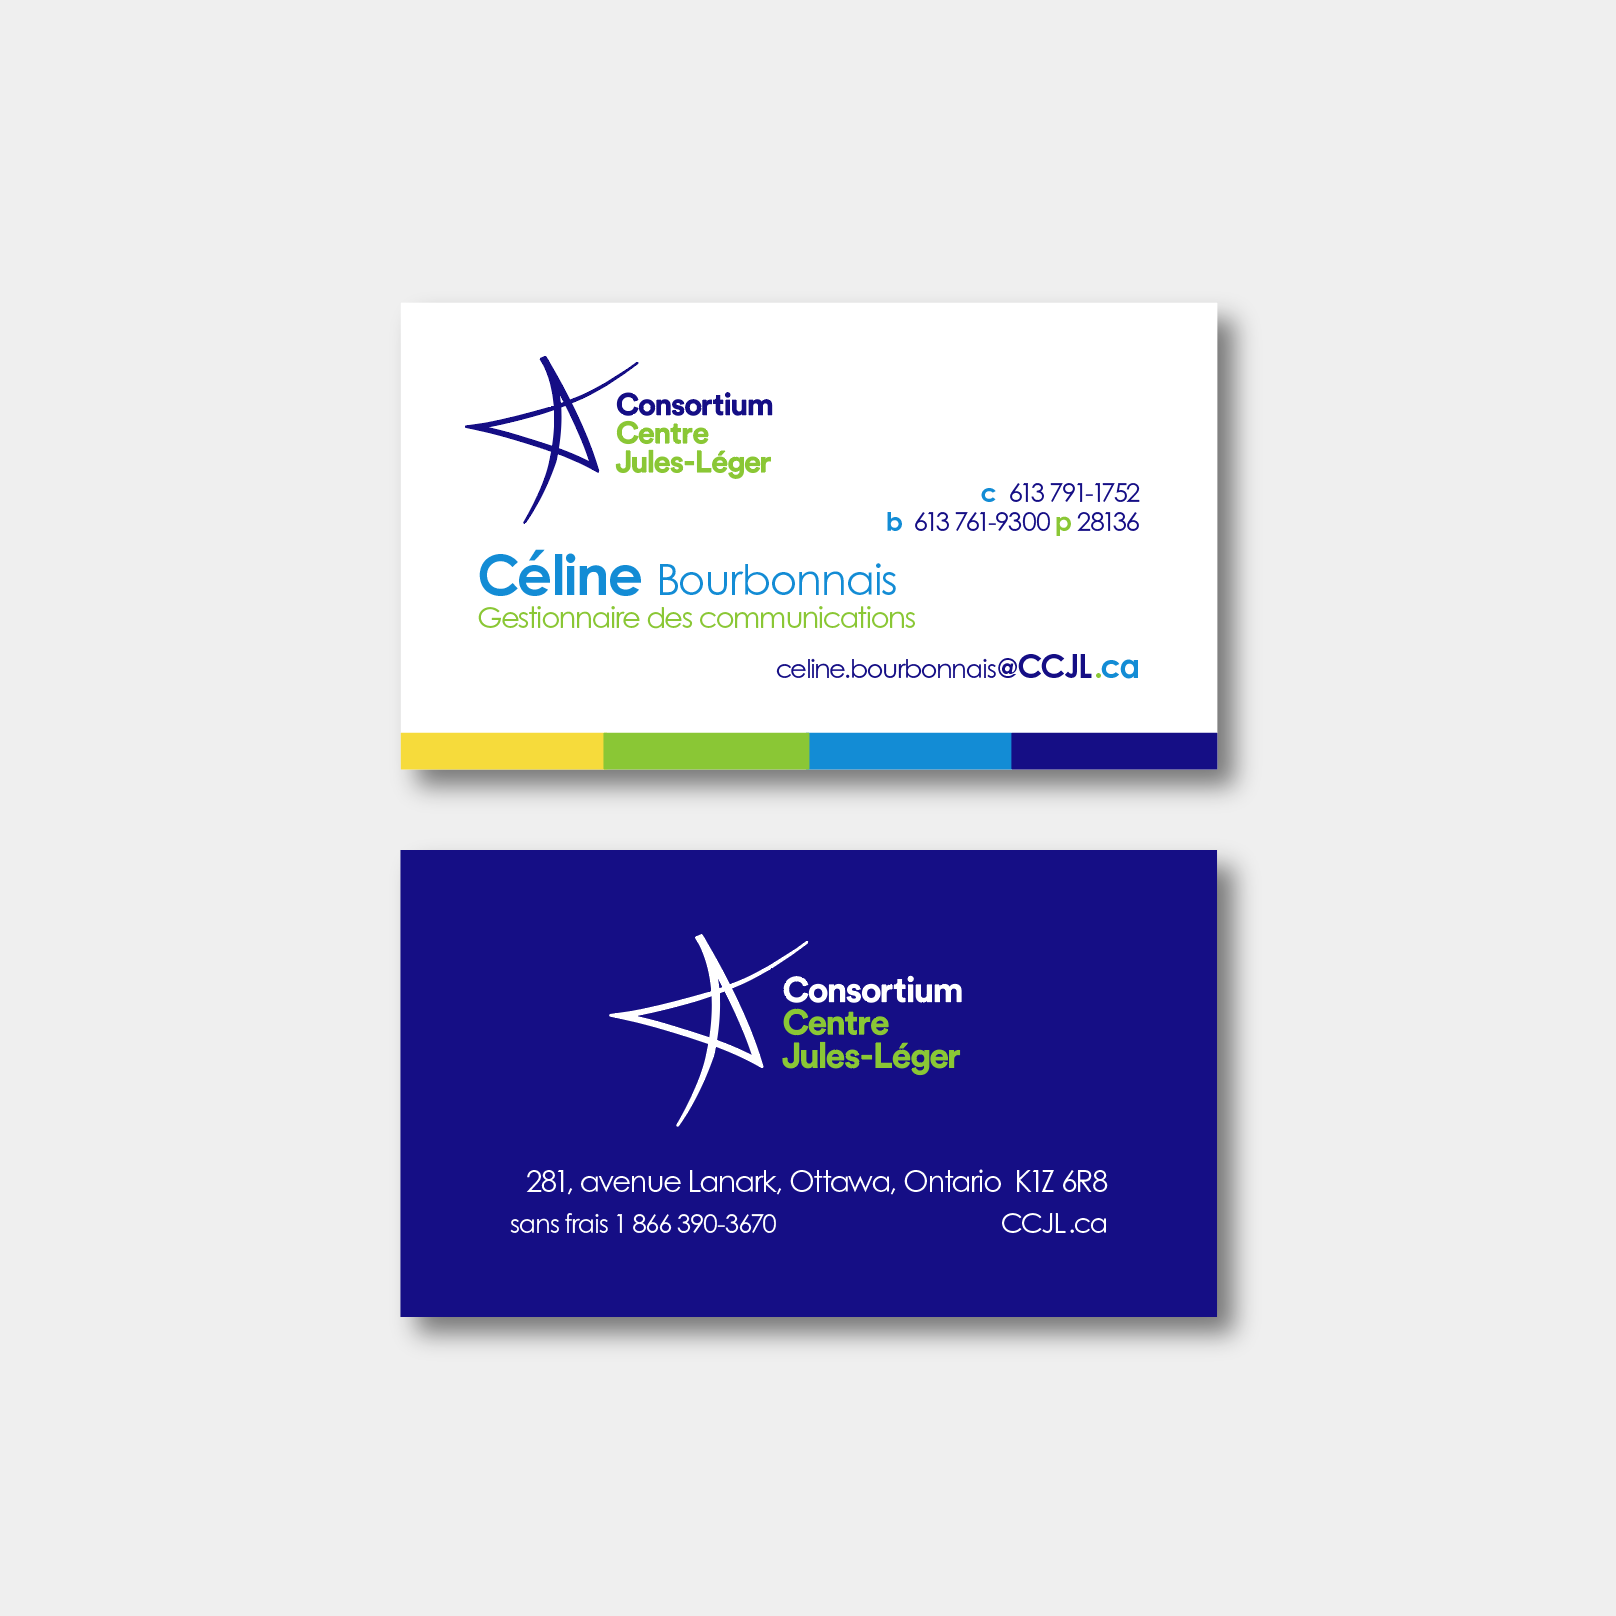 Consortium Centre Jules-Léger business card | Signage